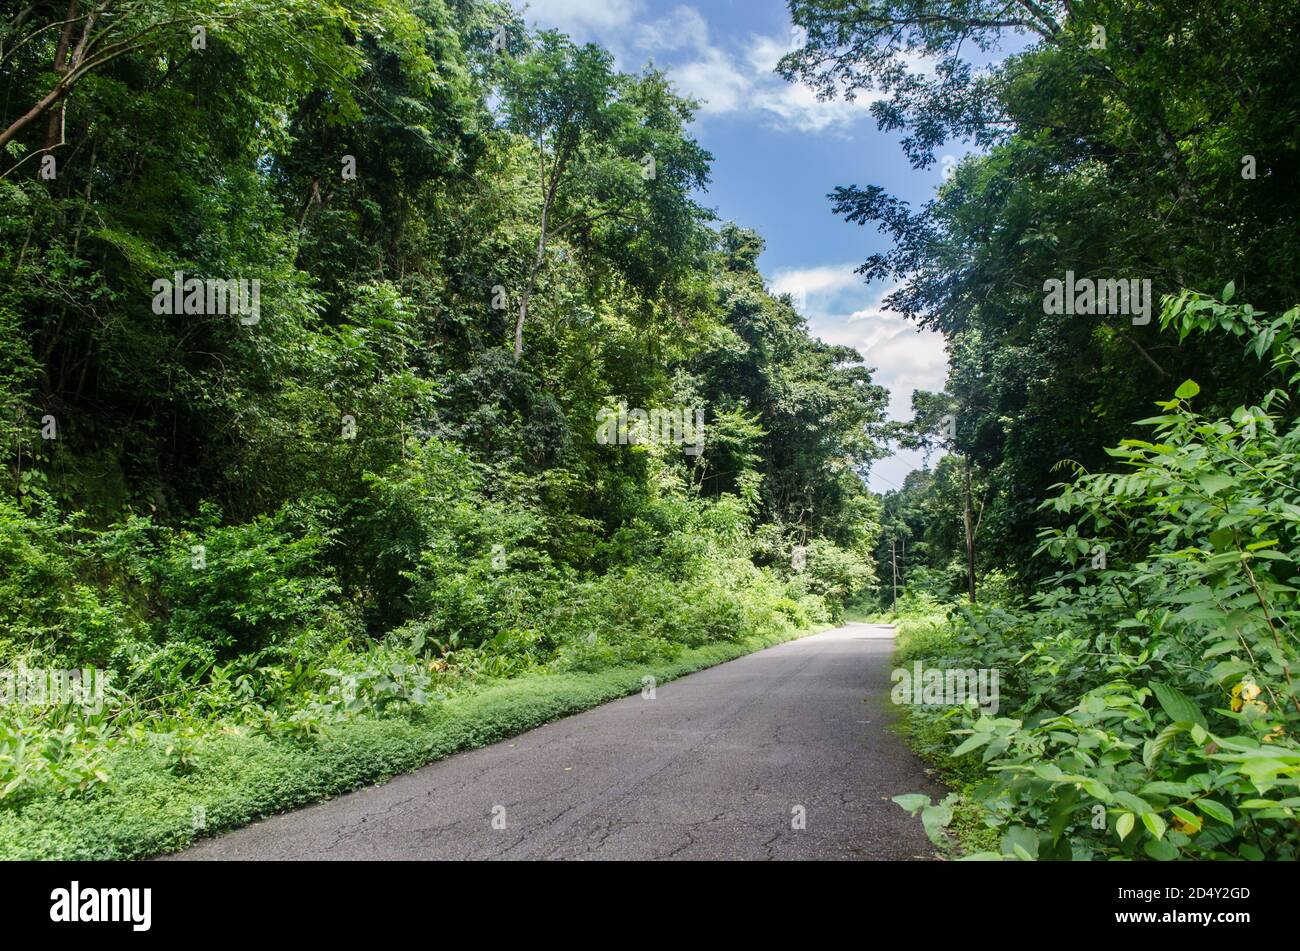 Route forestière serpentant à travers un feuillage luxuriant dans le parc national de San Lorenzo, une zone protégée située dans la province de Colón au Panama. Banque D'Images